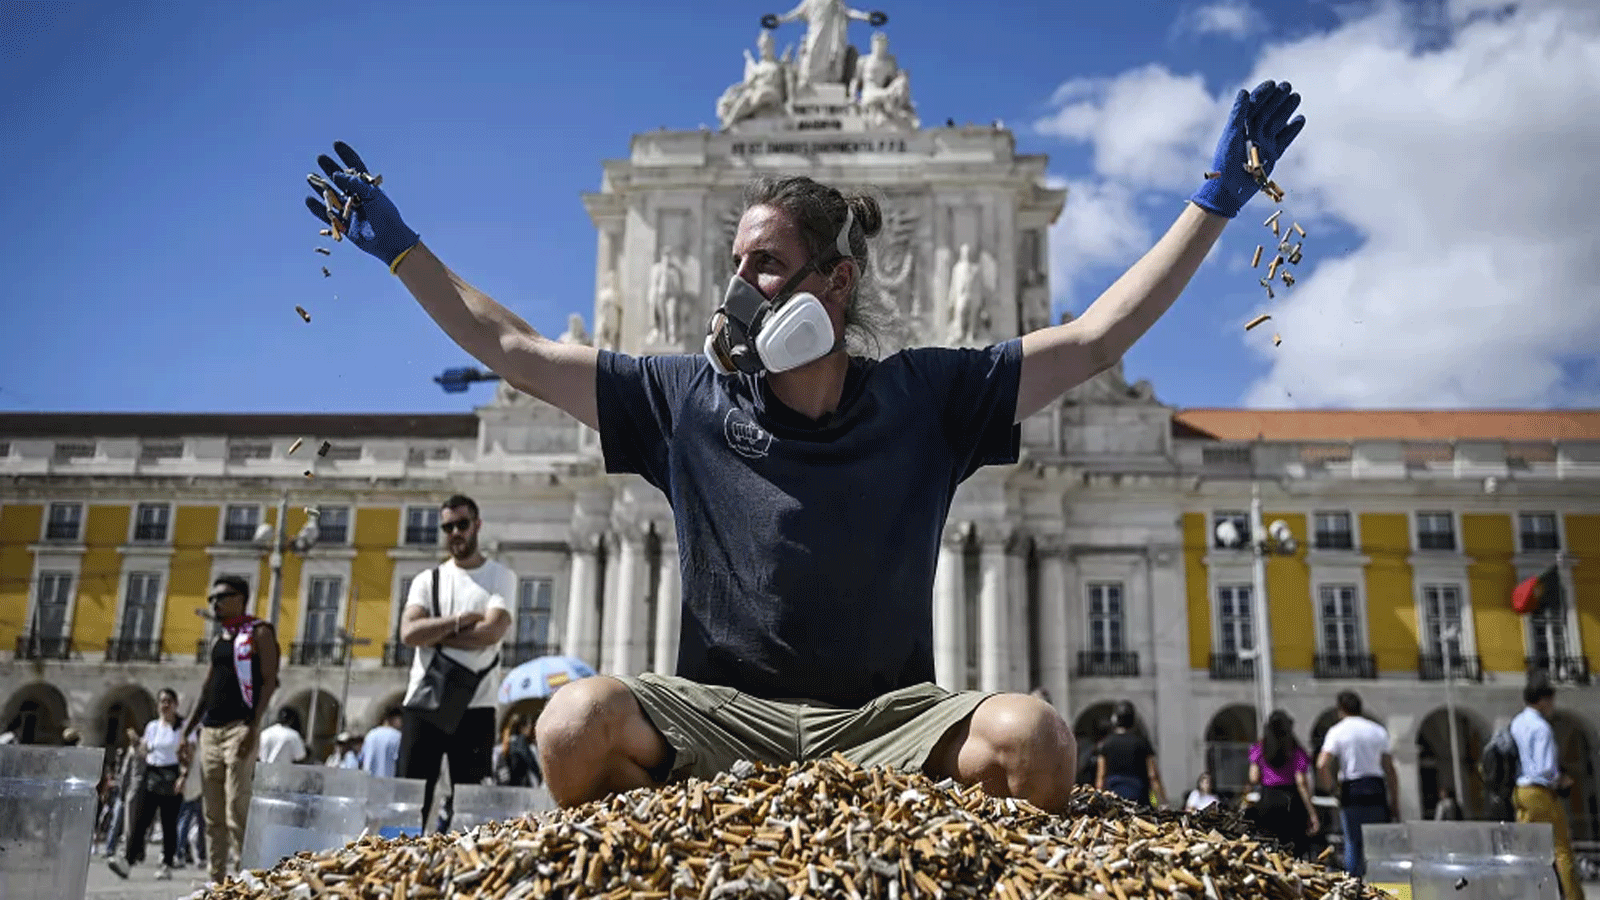 الناشط البيئي الألماني، أندرياس نوي يجلس فوق كومة من أعقاب السجائر التي تم جمعها في أسبوع واحد، في ميدان كوميرسيو \ لشبونة 